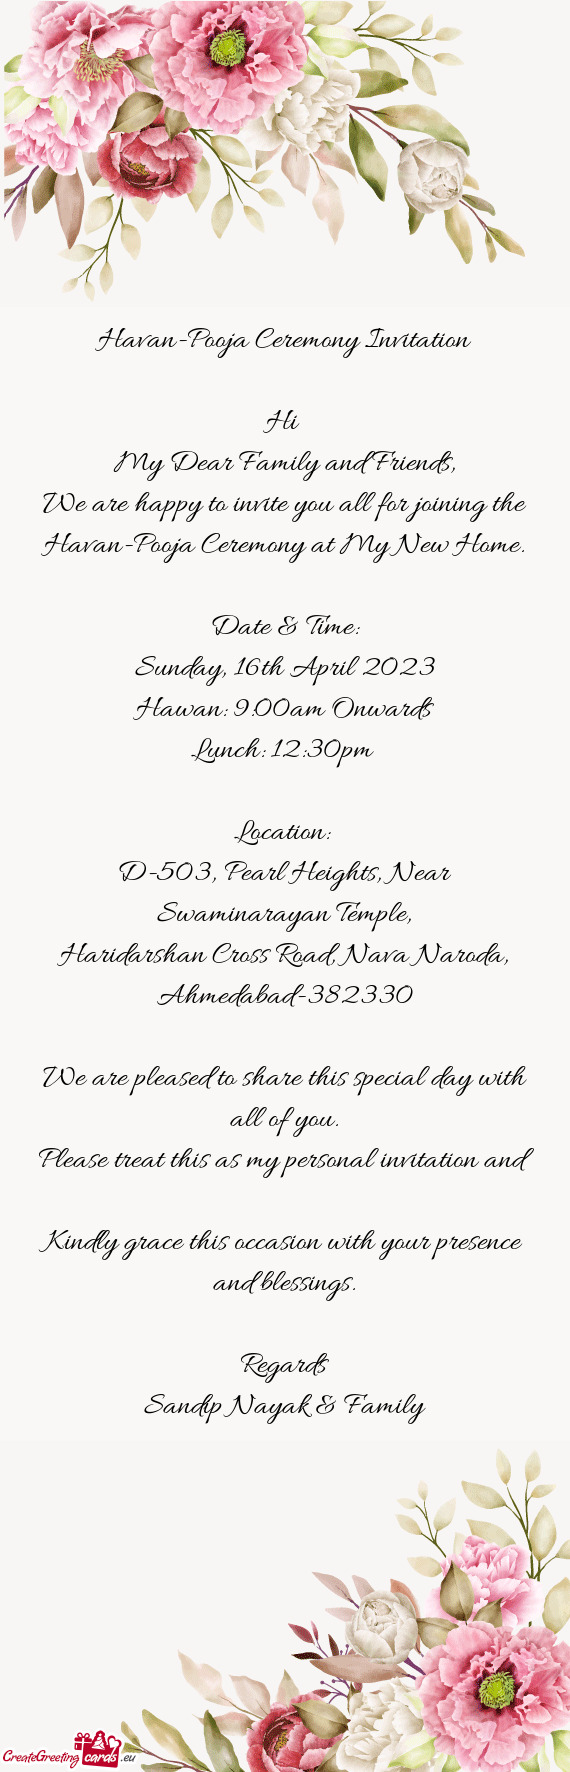 Havan-Pooja Ceremony Invitation